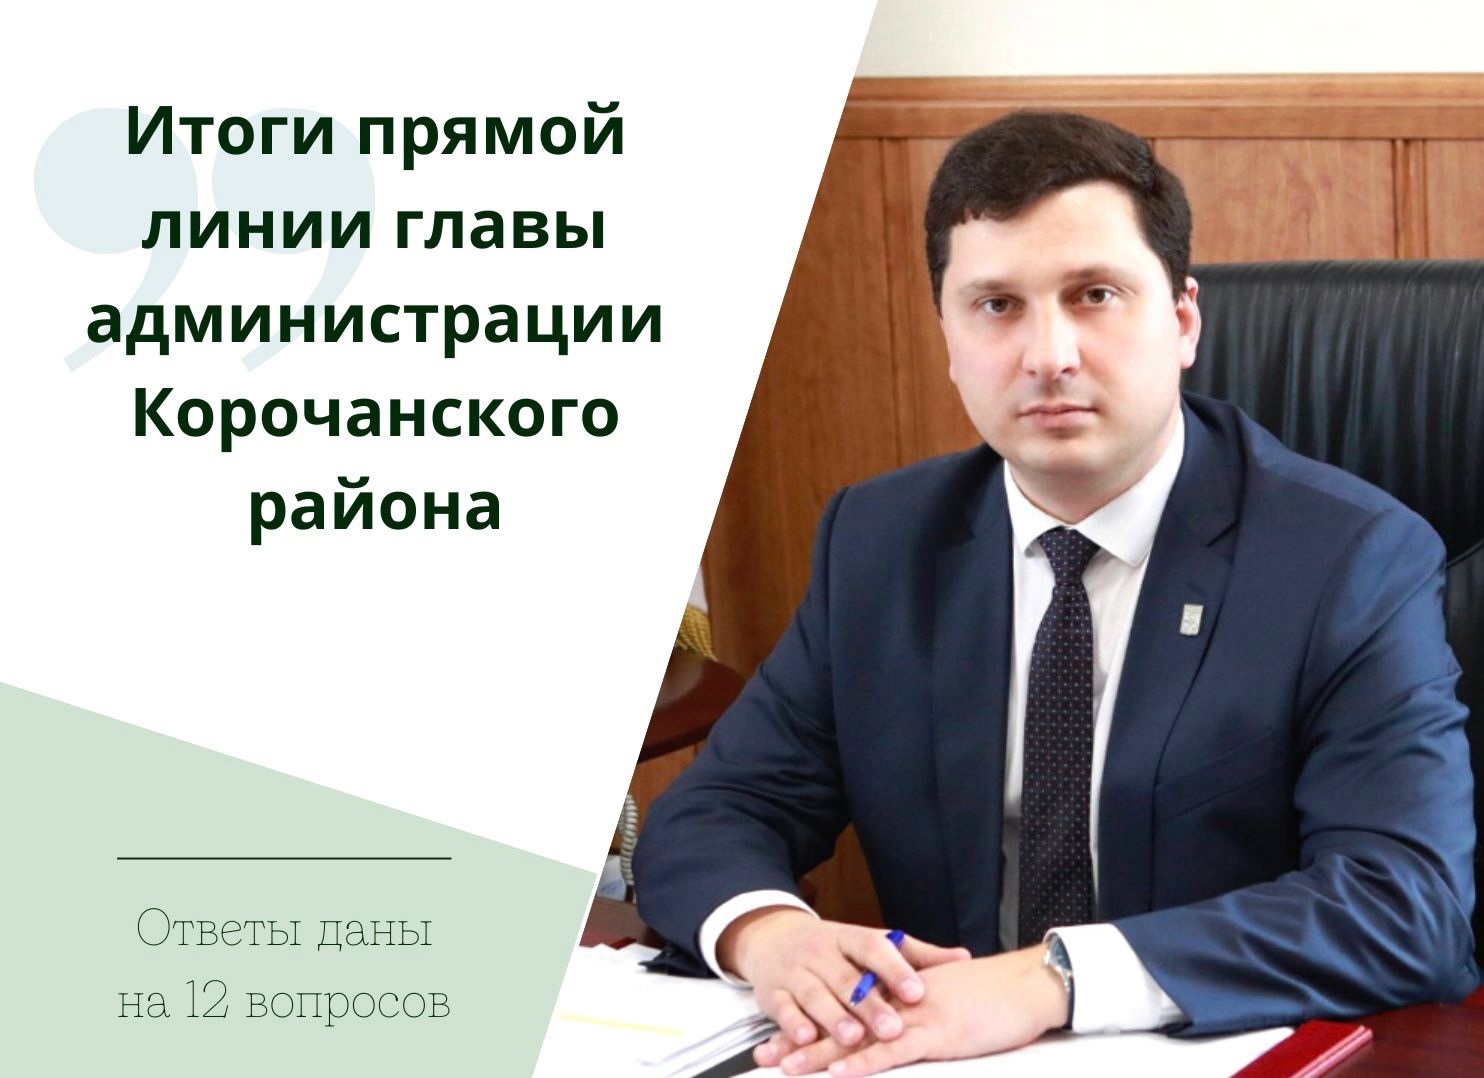 В ходе ежедневной прямой линии поступило 12 вопросов главе администрации Корочанского района